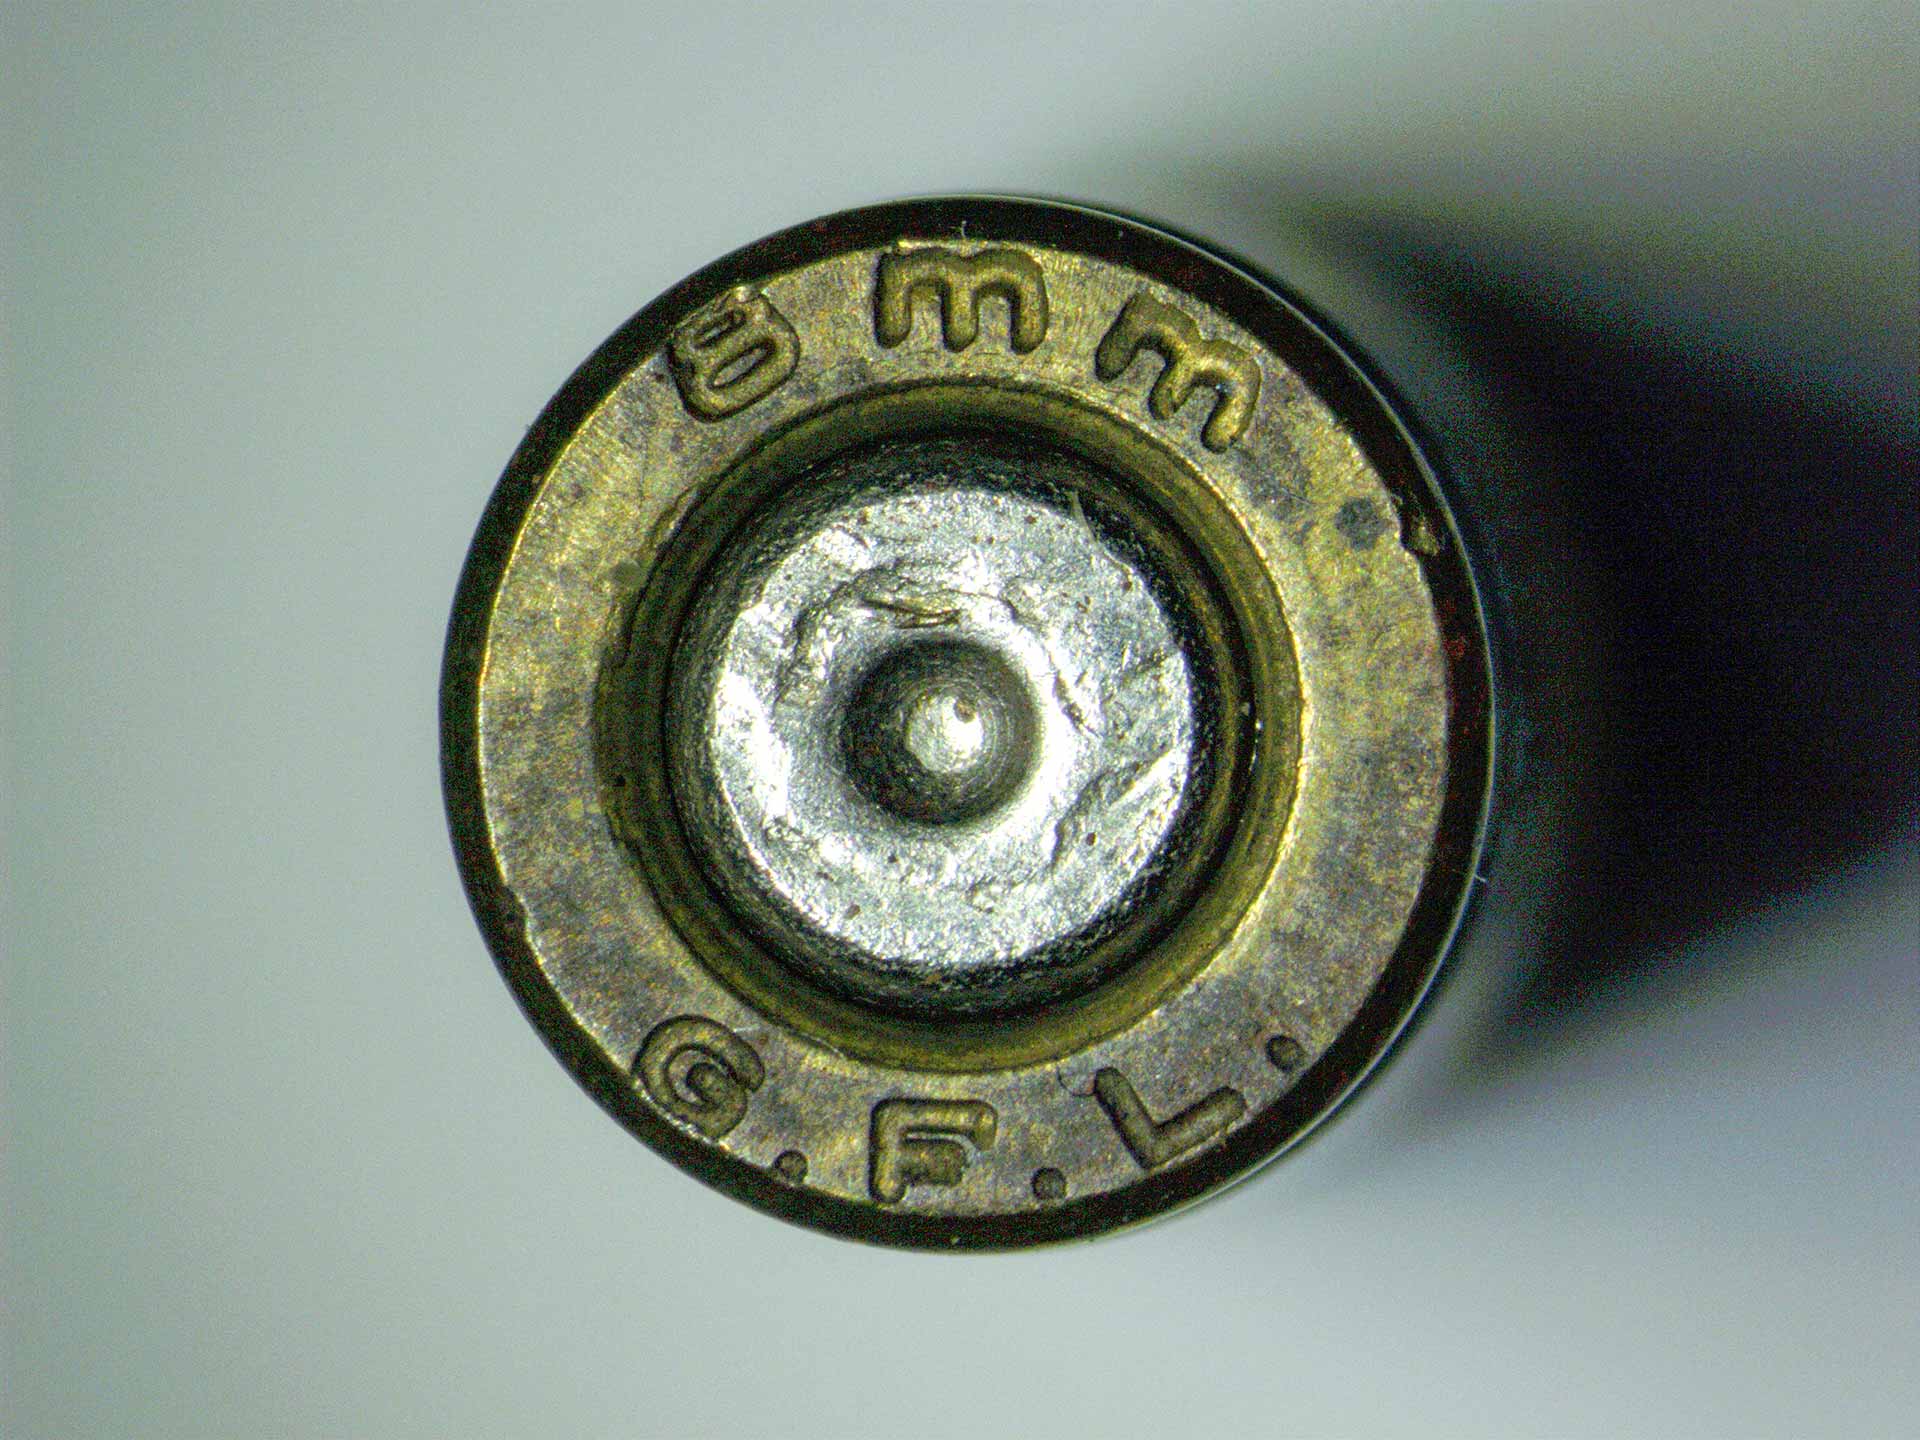 Douille de balle – Image capturée avec ZEISS Stemi 508, éclairage annulaire, quart de cercle gauche